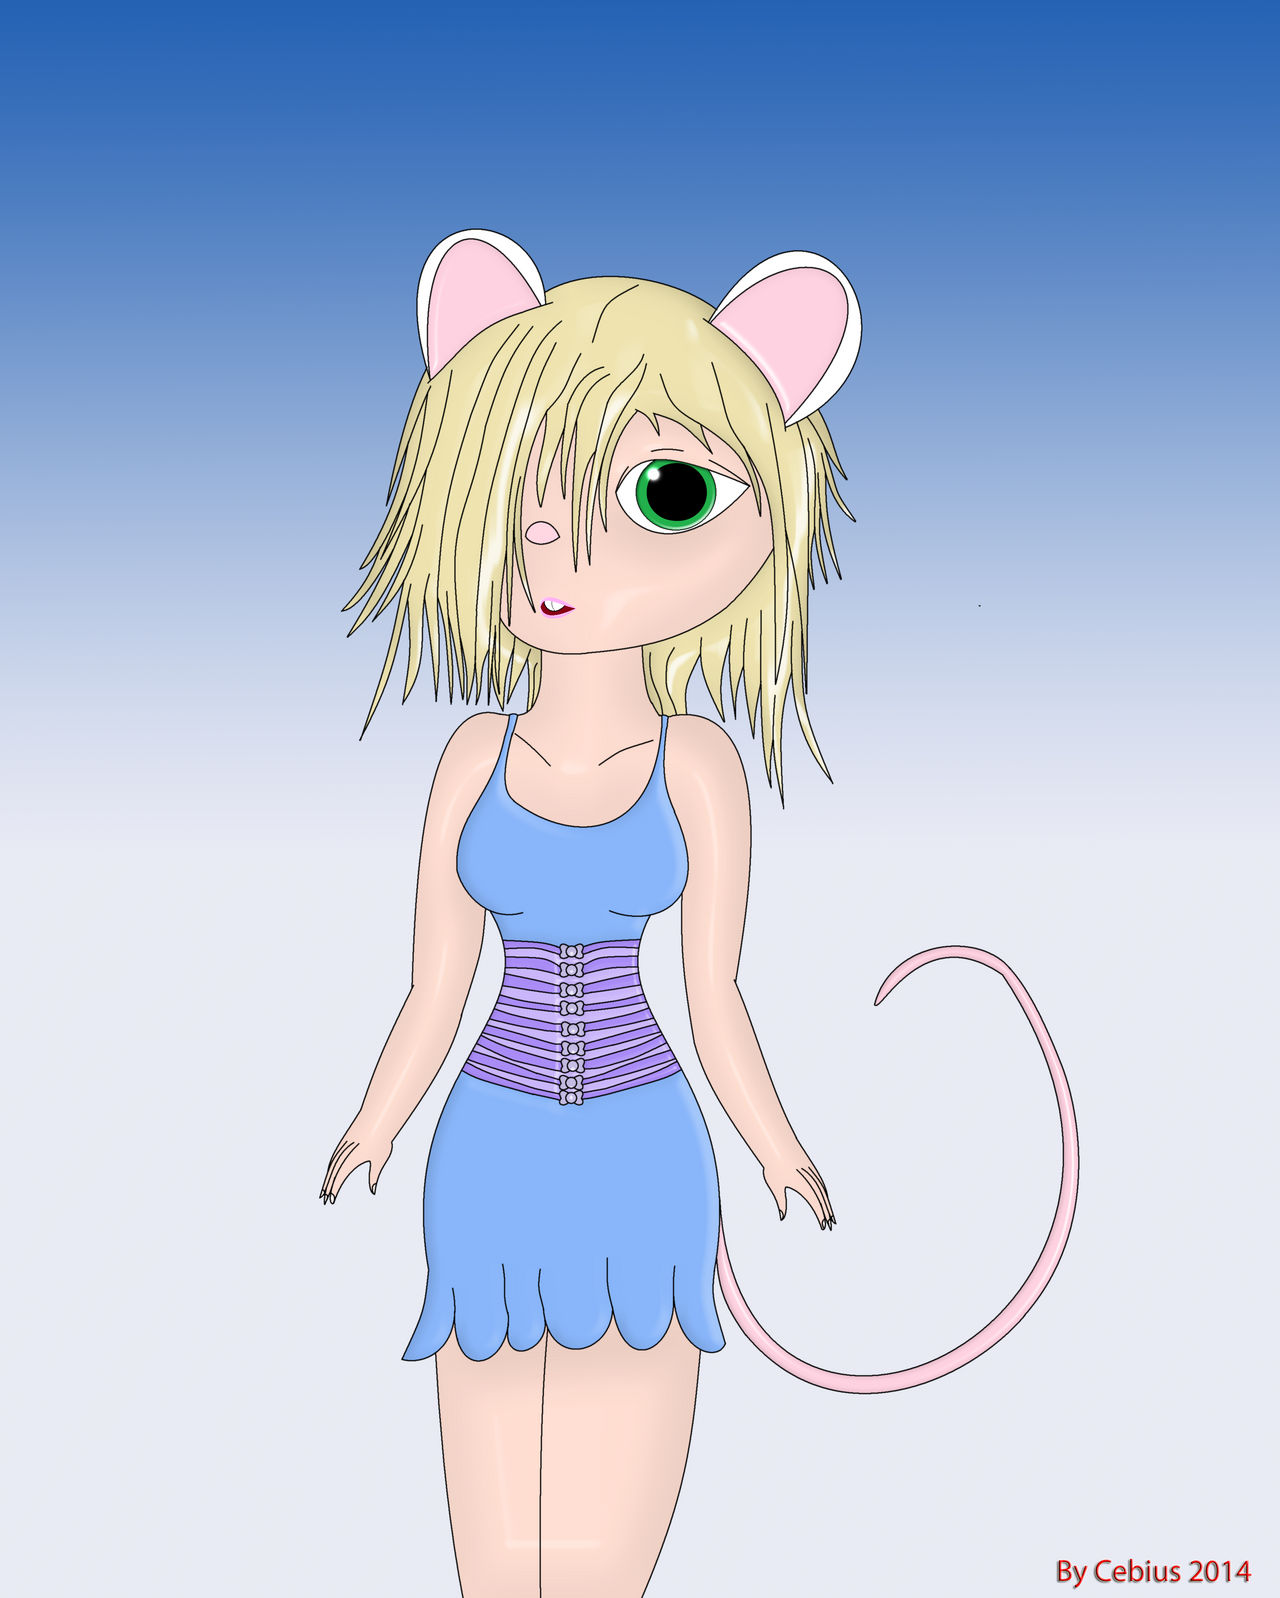 MeiMei The Mice